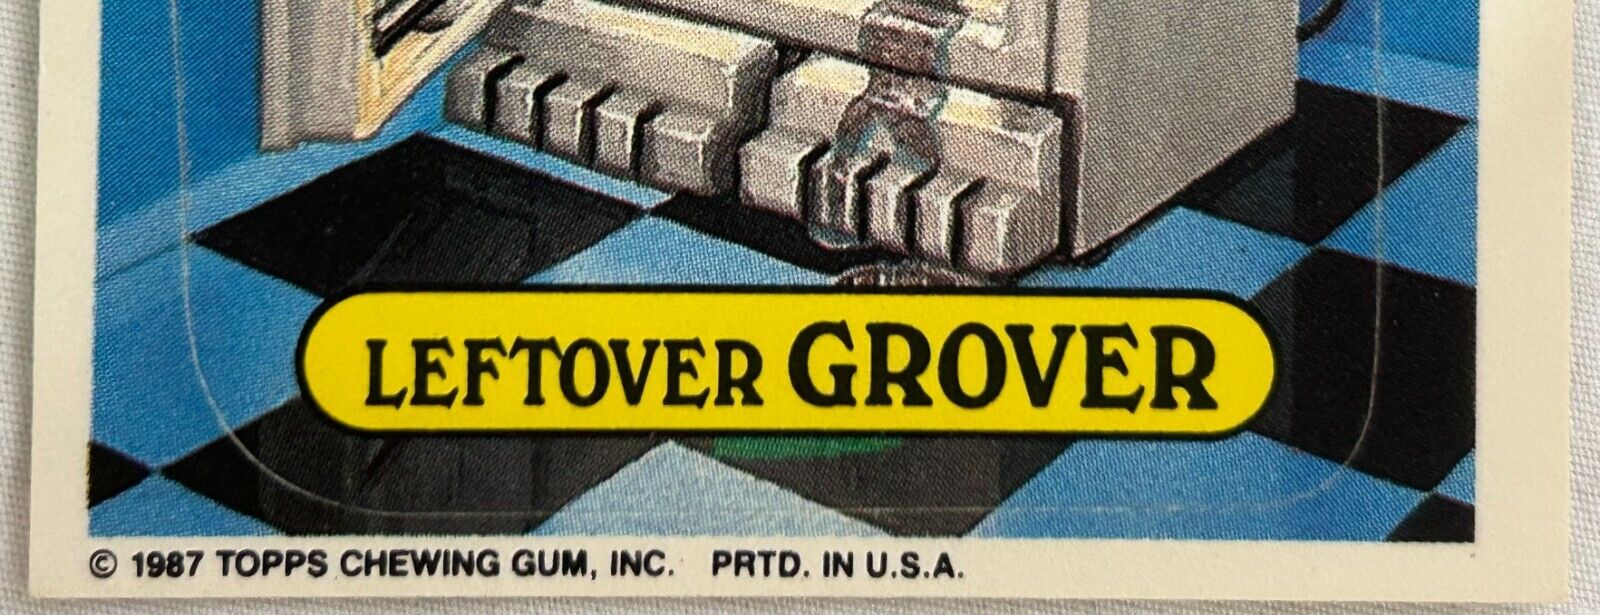 1987 Topps Garbage Pail Kids 306B LEFTOVER GROVER Trading Card GREEN SLIME ERROR